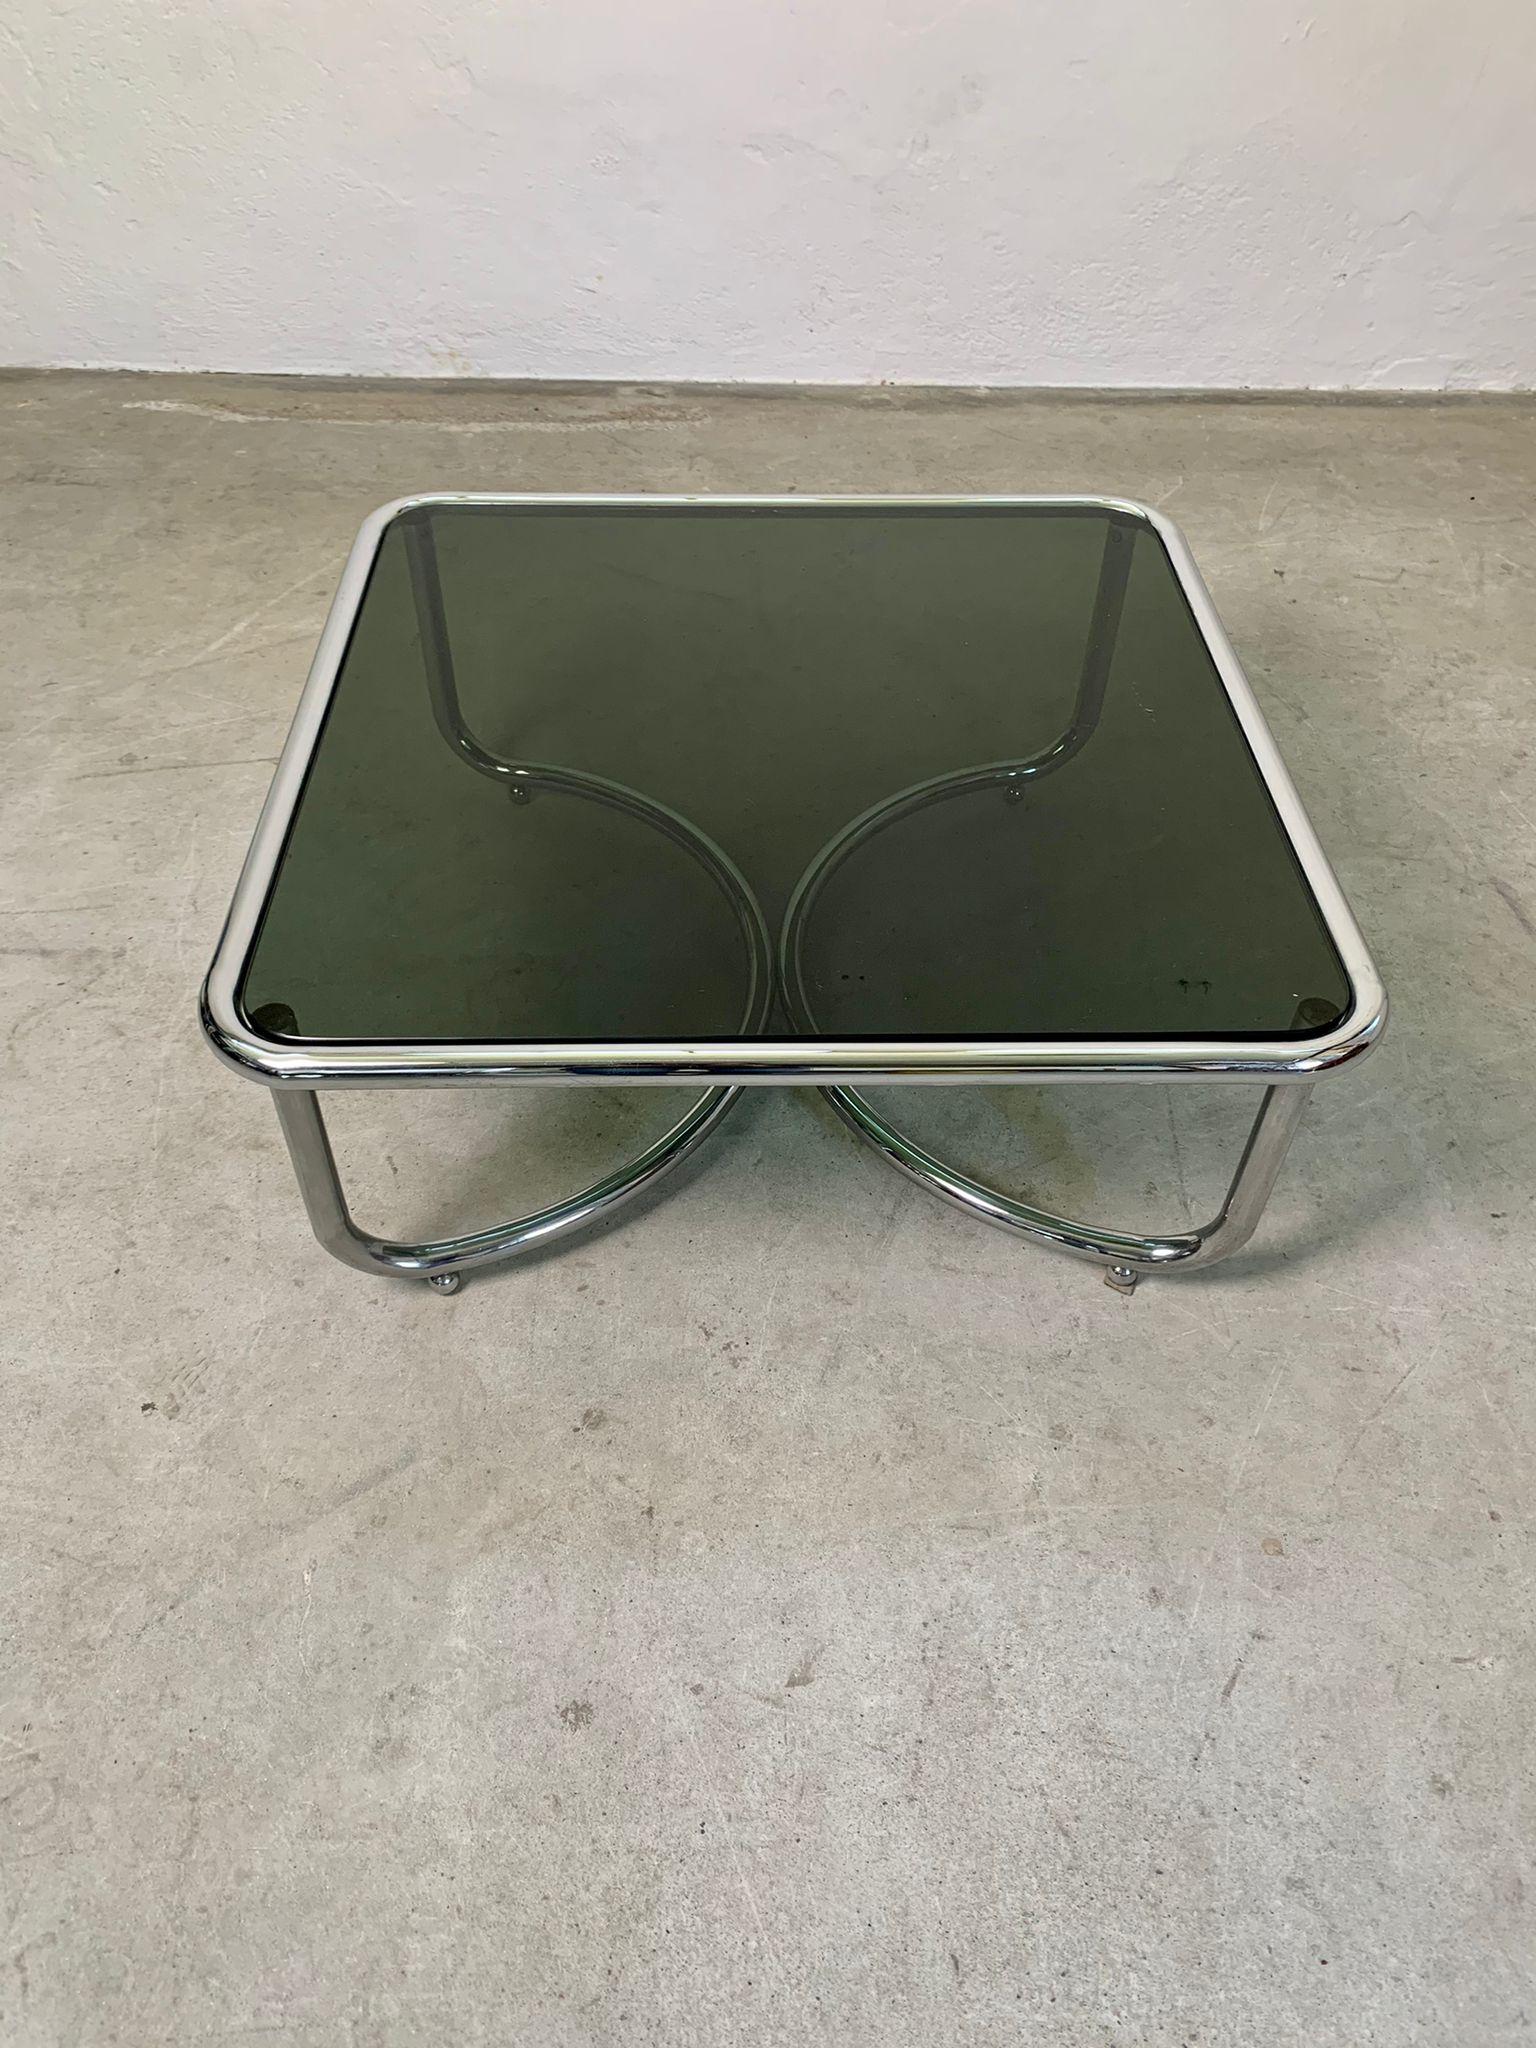 Niedriger Tisch mit Rauchglasplatte und verchromtem Stahlgestell von Gae Aulenti für Poltronova, 1964

Niedriger Tisch mit Rauchglasplatte und verchromtem Stahlgestell mit Rollen. Schönes Modell von Gae aulenti für Poltronova.